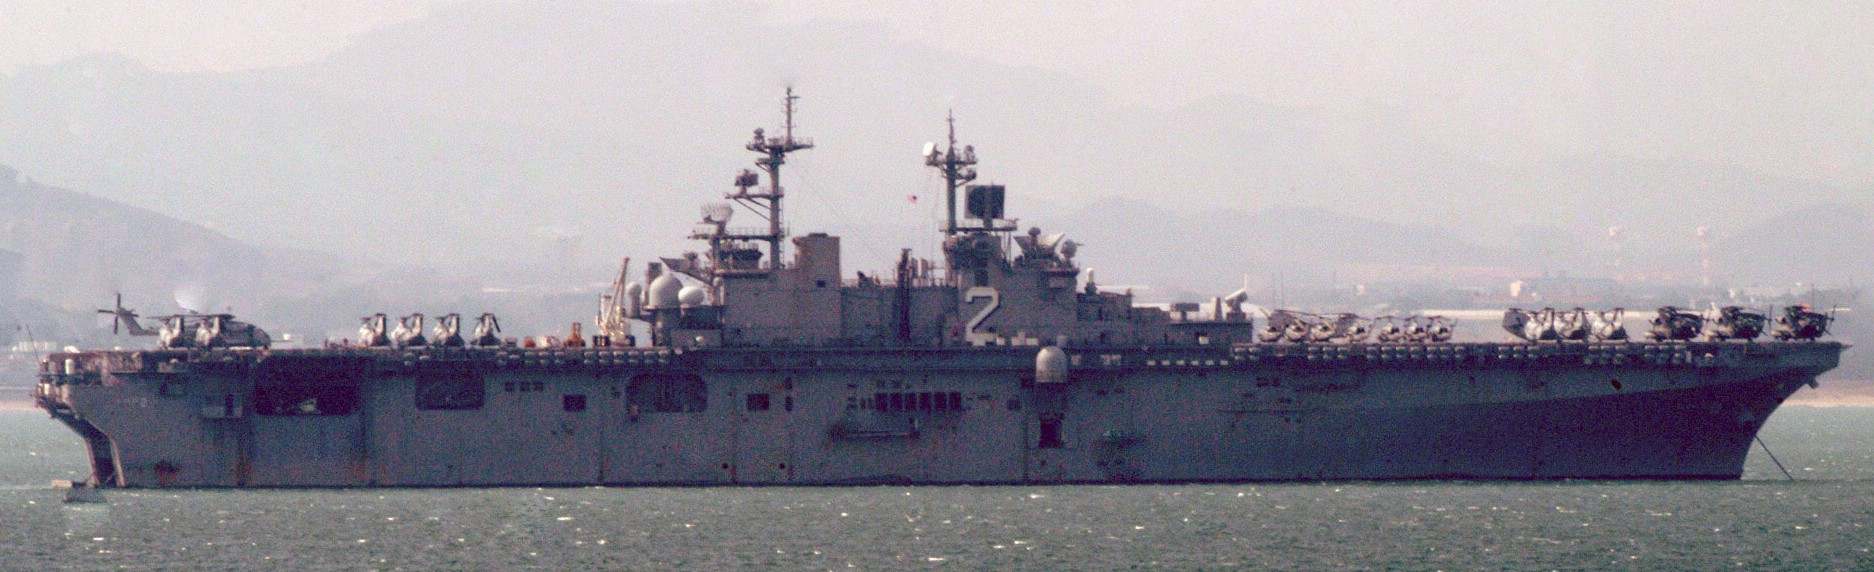 lhd-2 uss essex wasp class amphibious assault ship landing helicopter us navy marines hmm-262 pohang korea 36